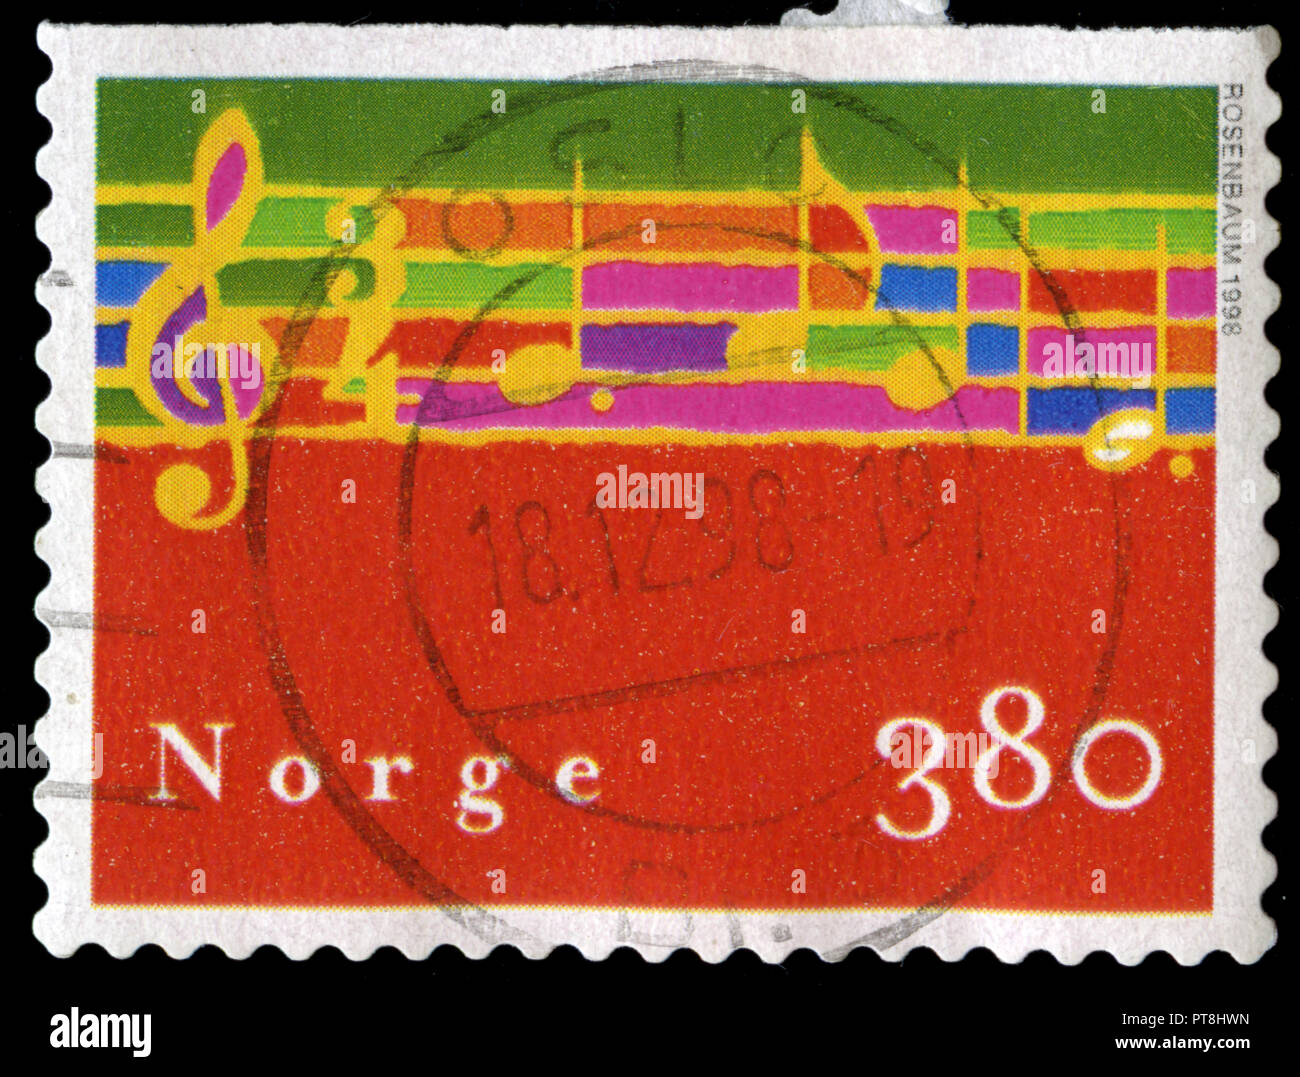 Timbre cachet de la Norvège dans la série de noël publiée en 1998 Banque D'Images